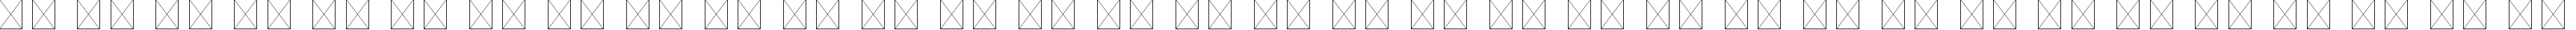 Пример написания русского алфавита шрифтом Eviolite Regular